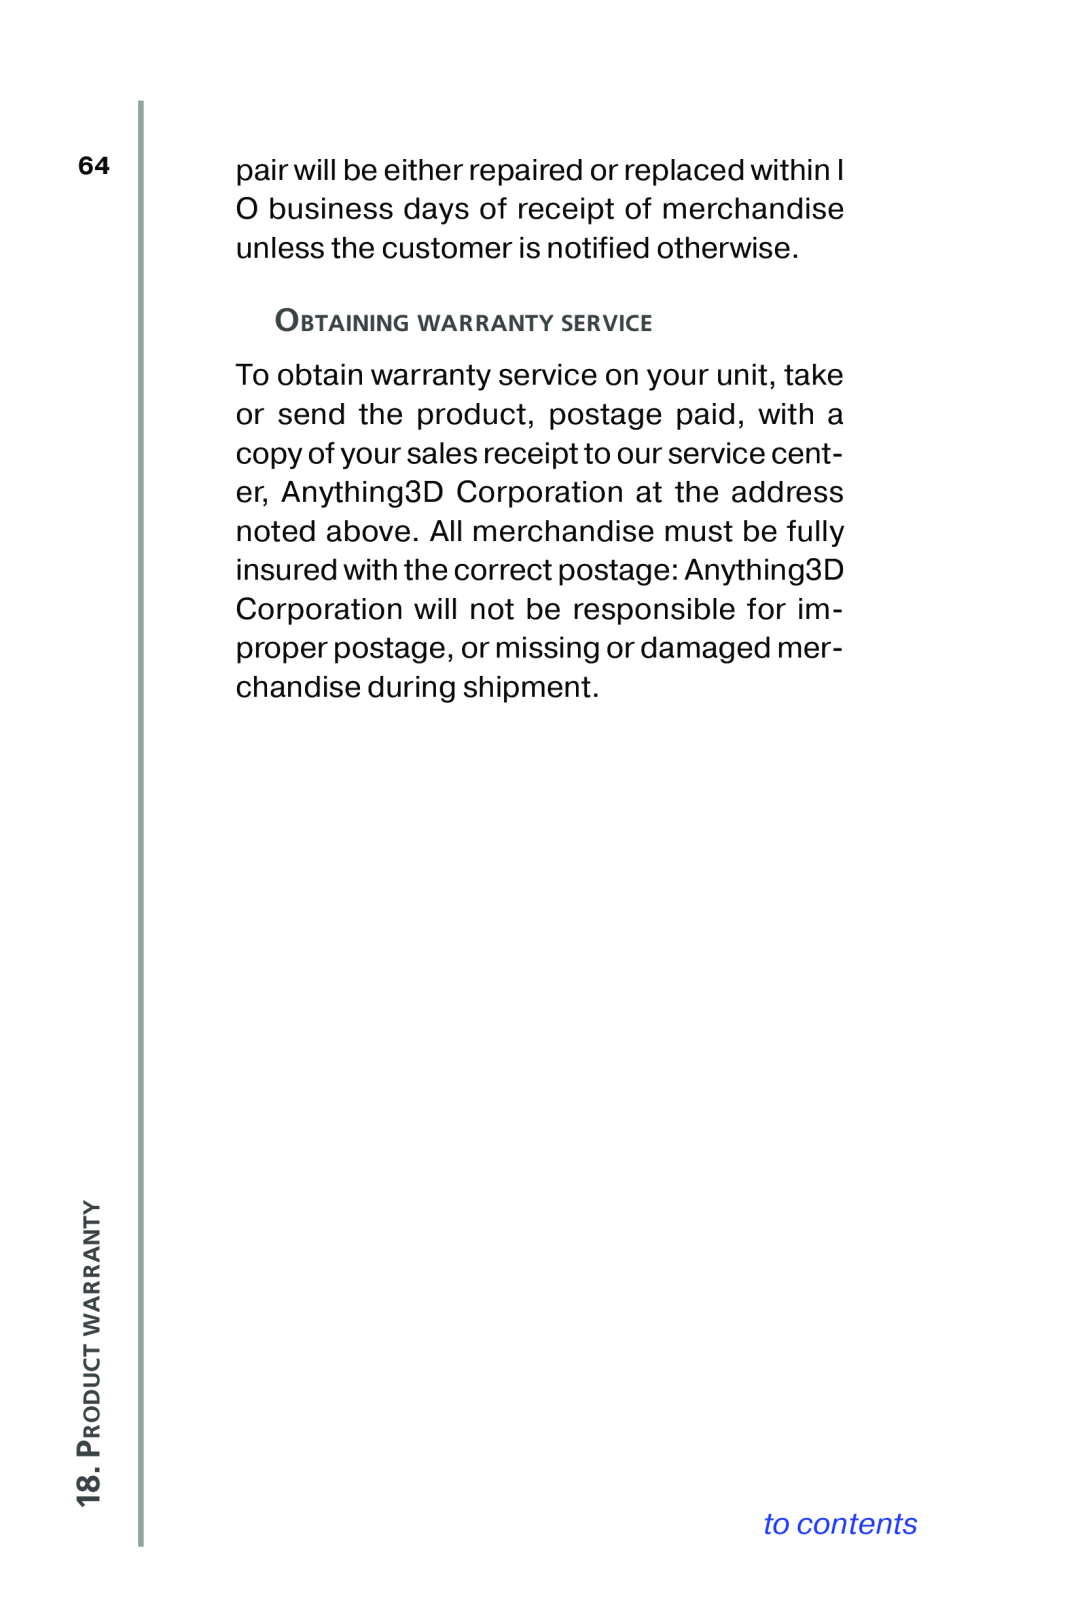 Nikon XT350, XT100 manual to contents, Product Warranty, Obtaining Warranty Service 